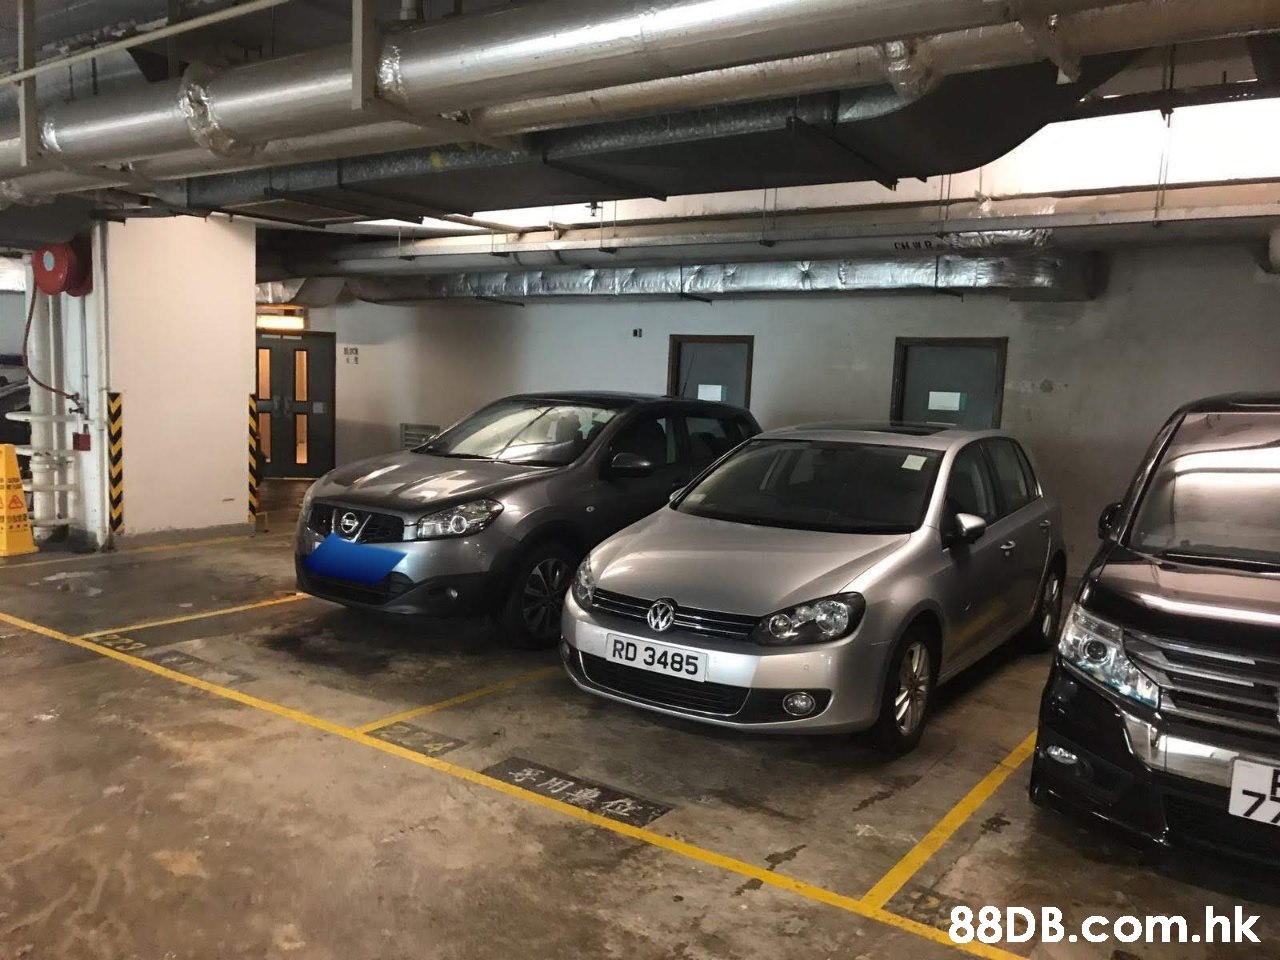 CL R RD 3485 .hk  Parking,Car,Vehicle,Automotive design,Parking lot